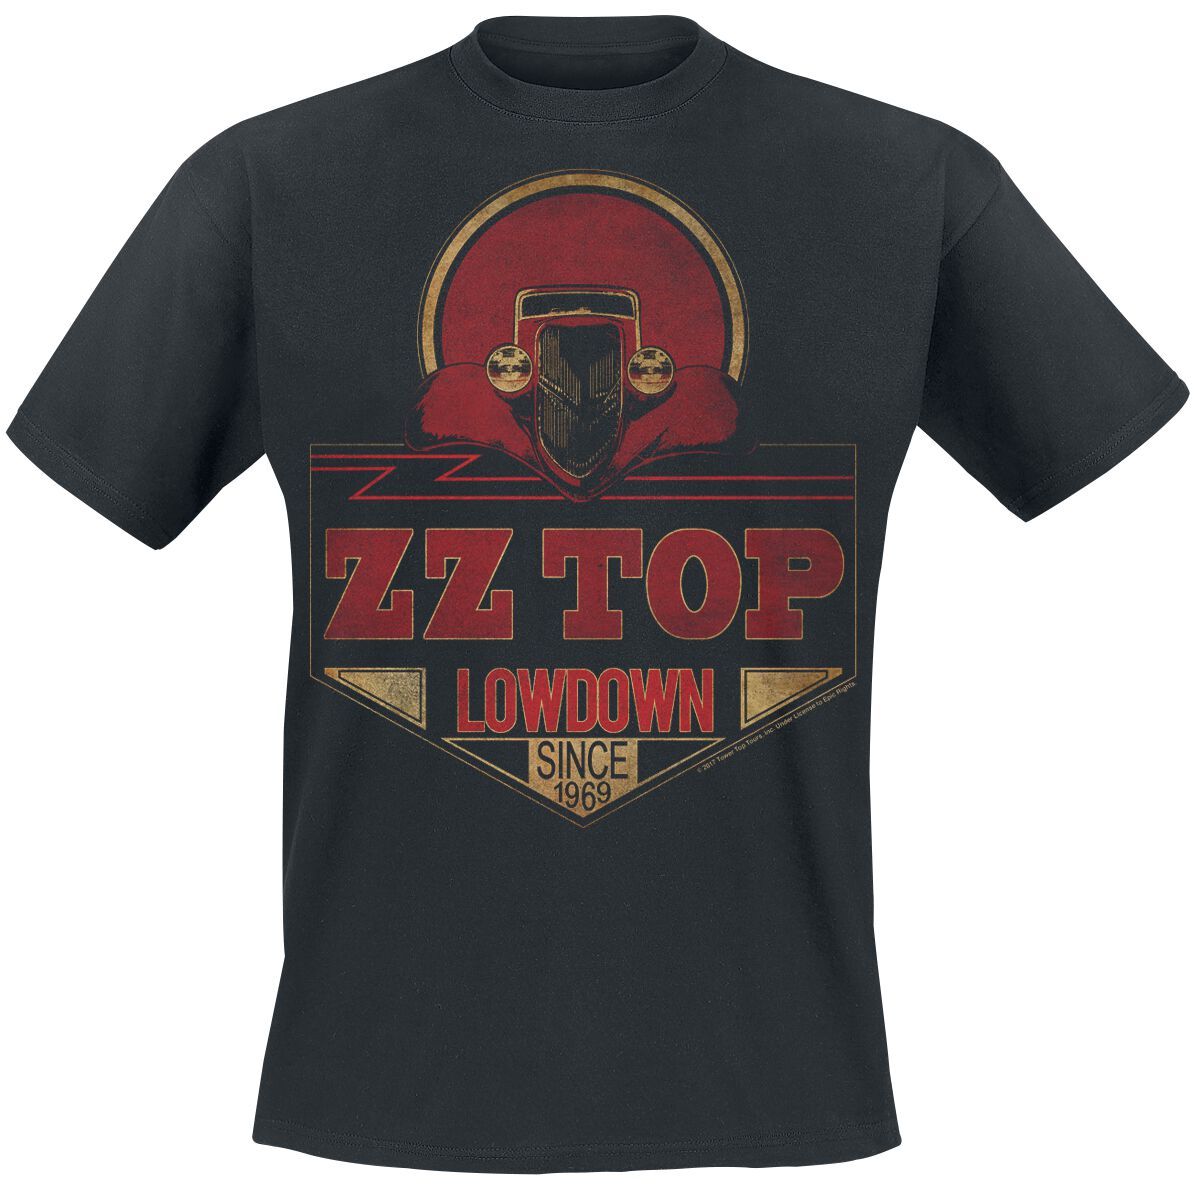 ZZ Top T-Shirt - Lowdown Since 1969 - S bis XXL - für Männer - Größe XL - schwarz  - Lizenziertes Merchandise!